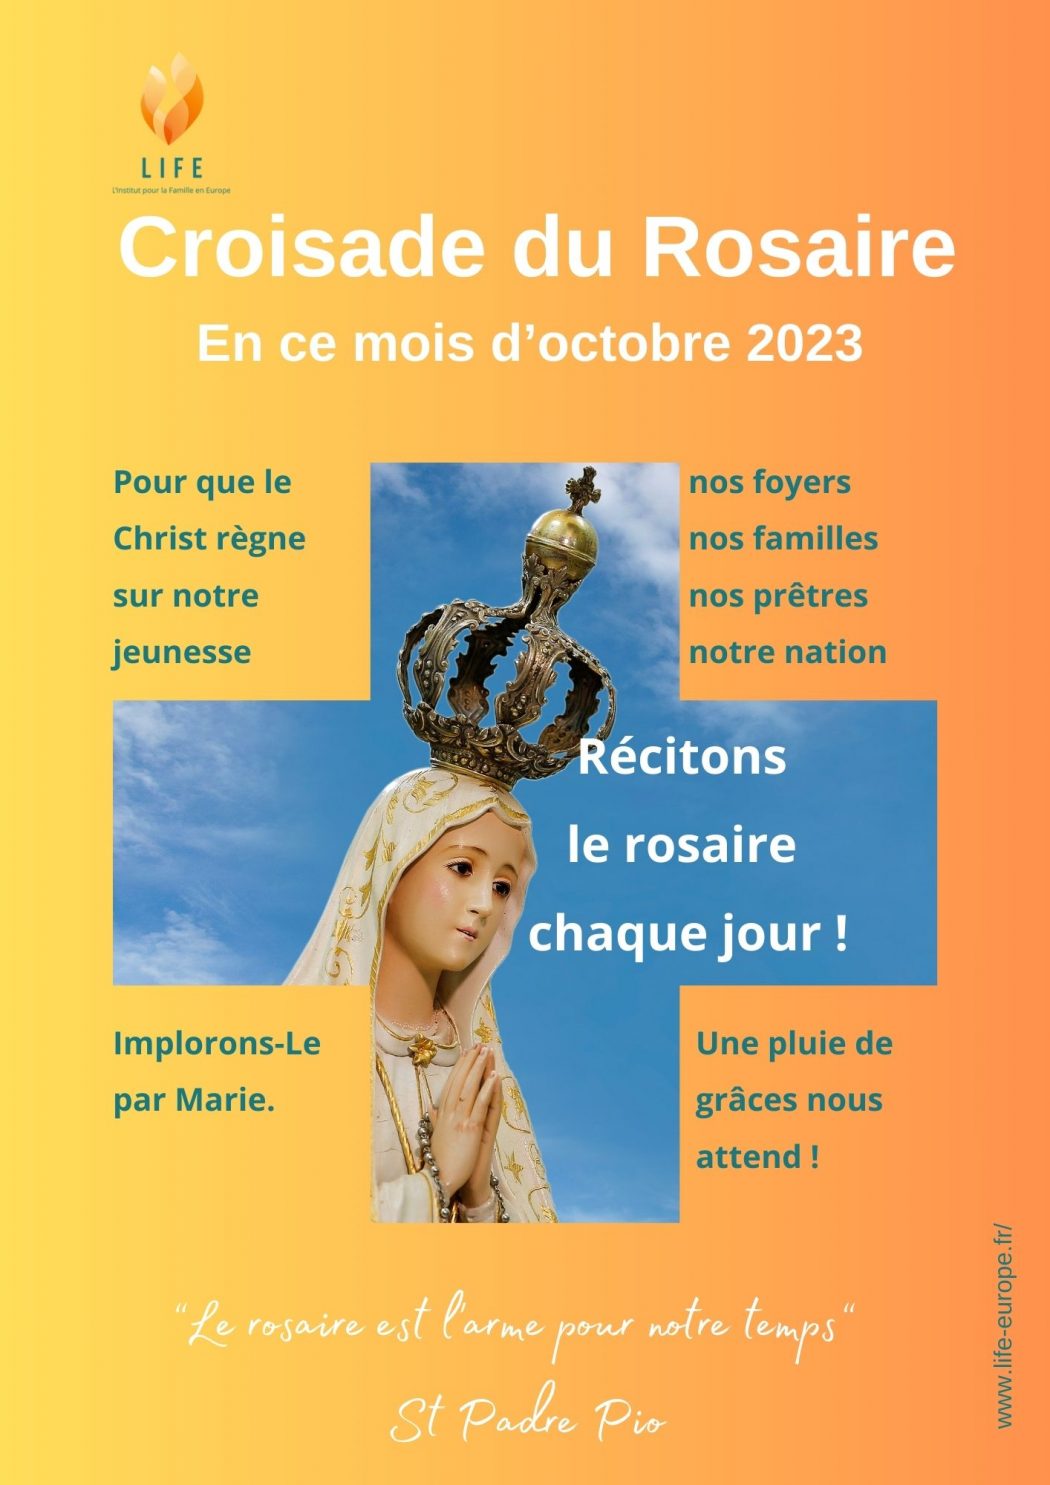 Rejoignez la croisade du rosaire